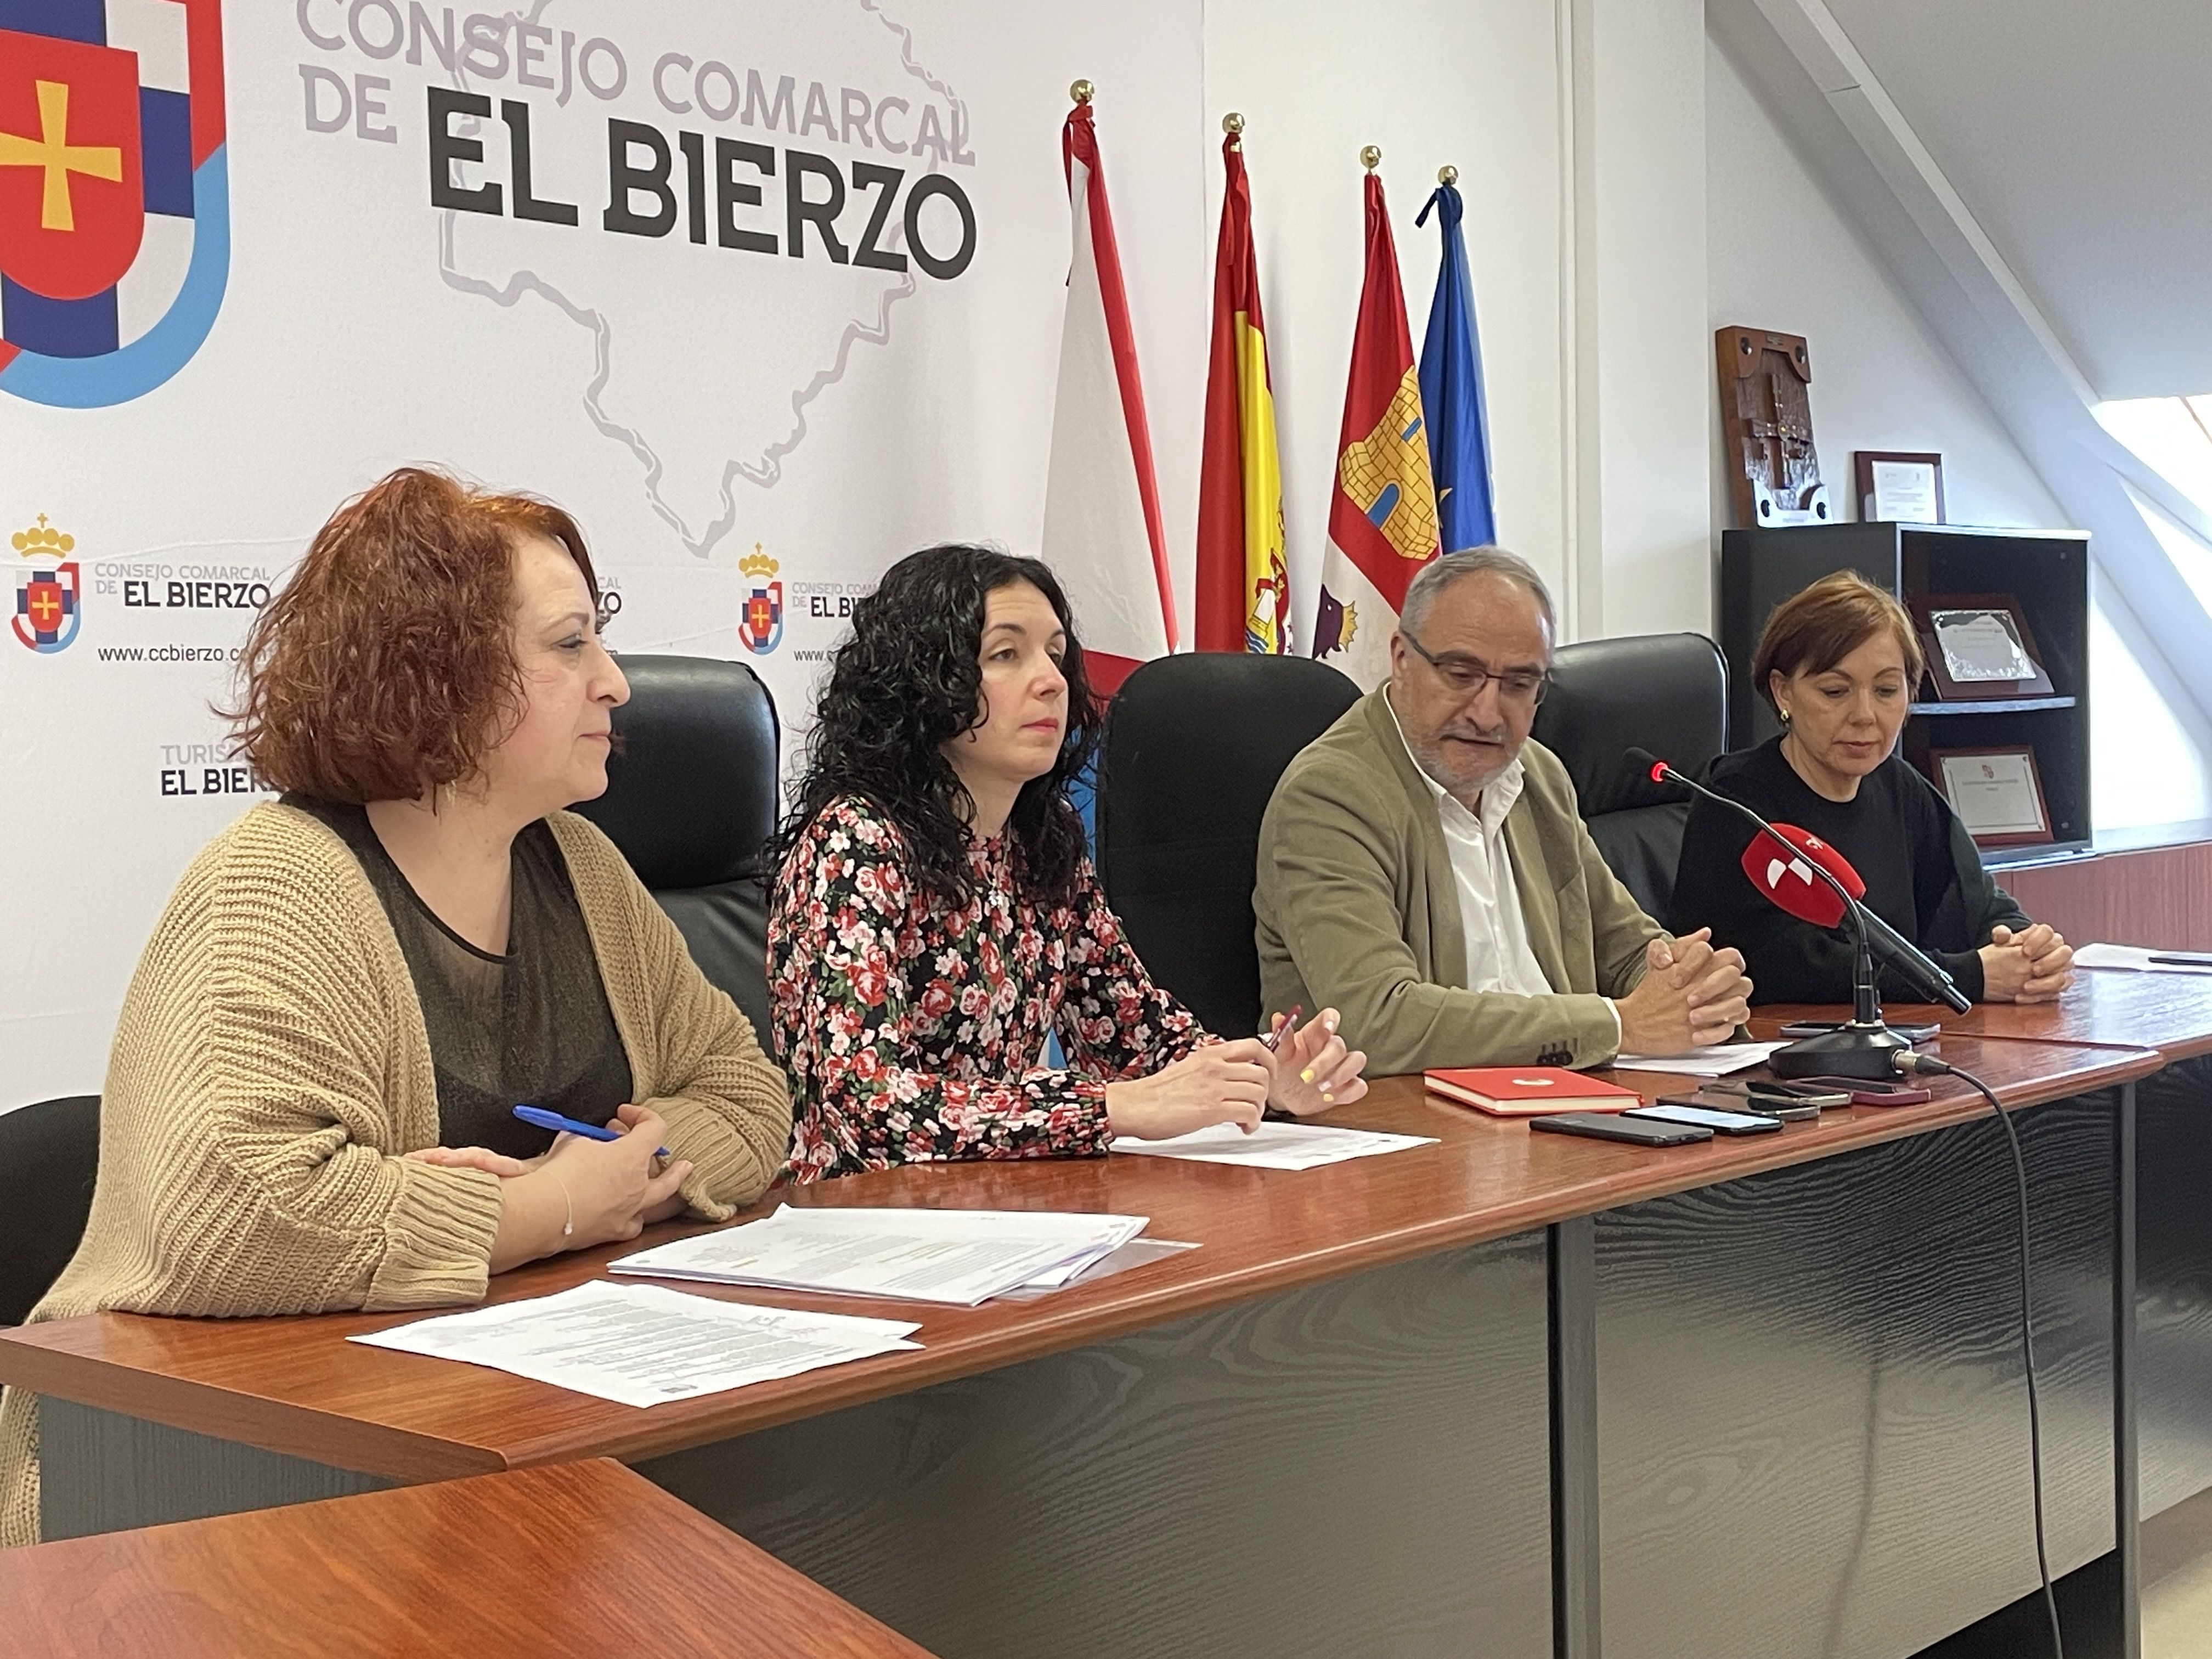 Presentación de los proyectos en la sede del Consejo Comarcal. | Javier Fernández